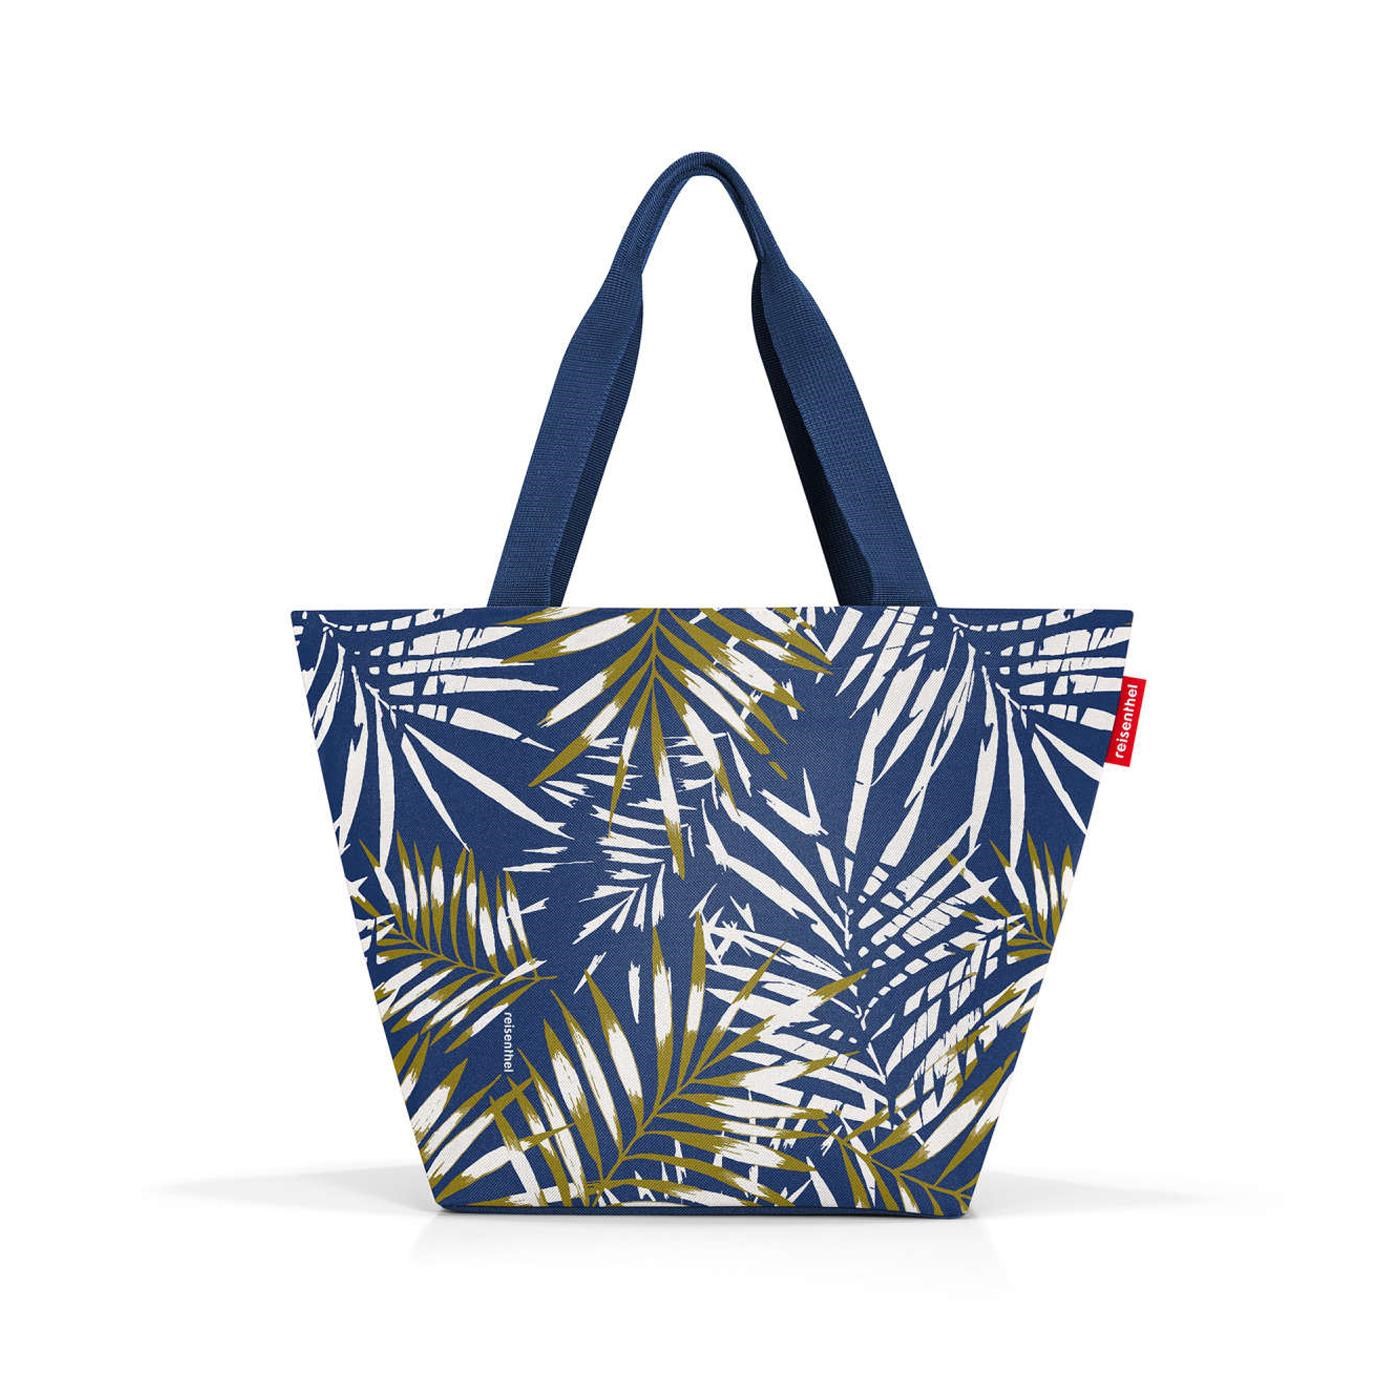 Nákupní taška Shopper M jungle space blue_1